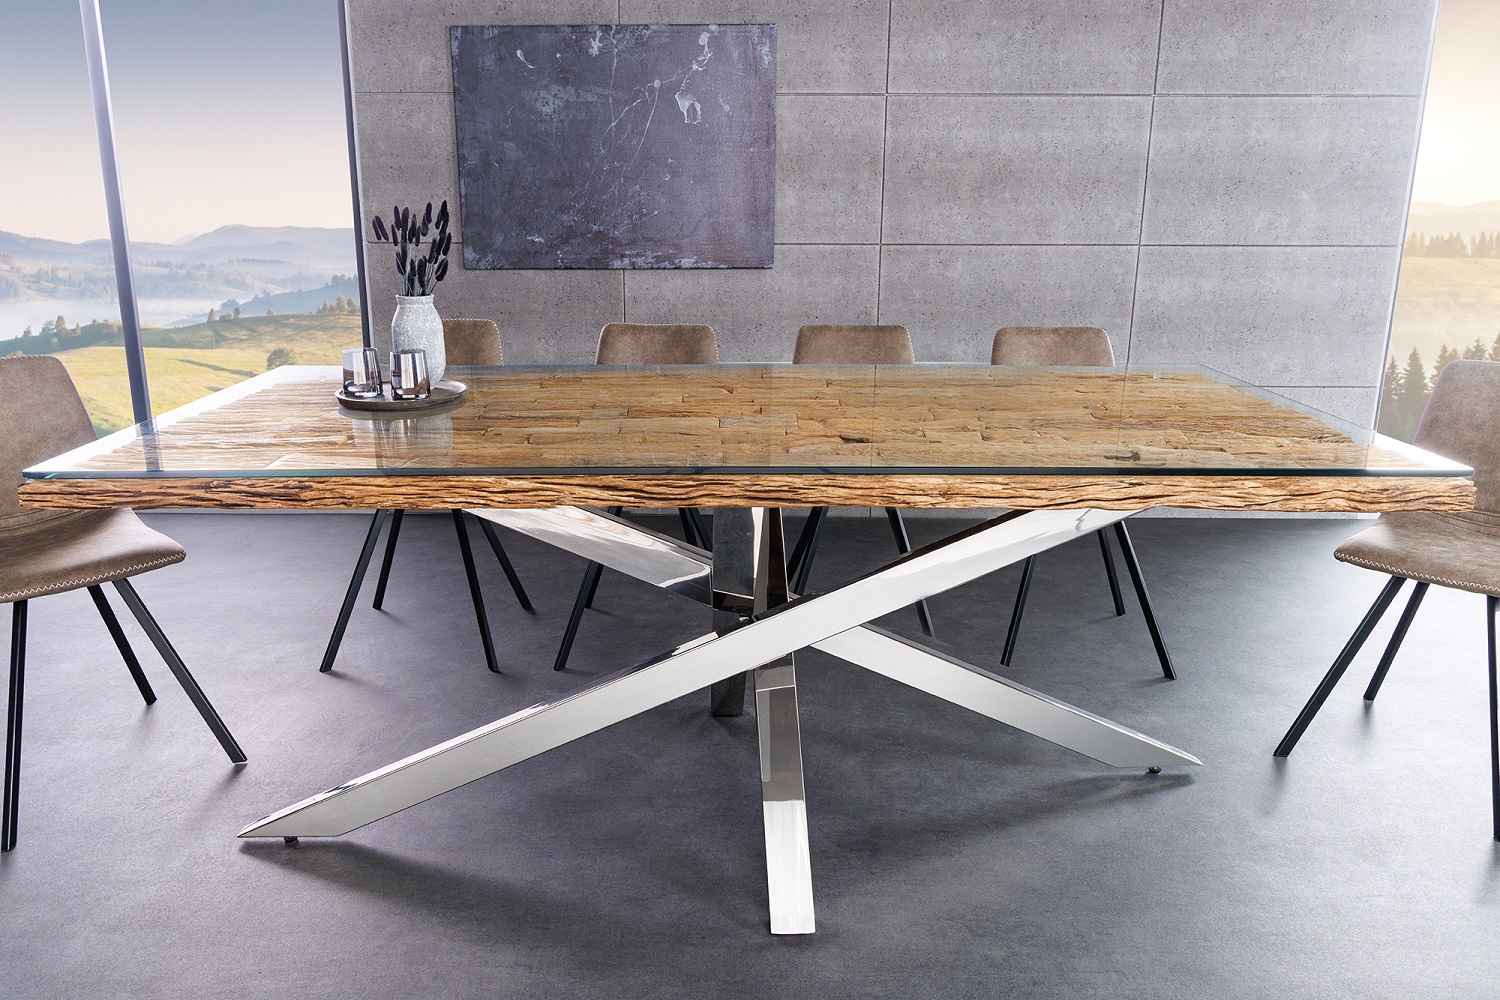 LuxD Designový jídelní stůl Shark 220 cm teak